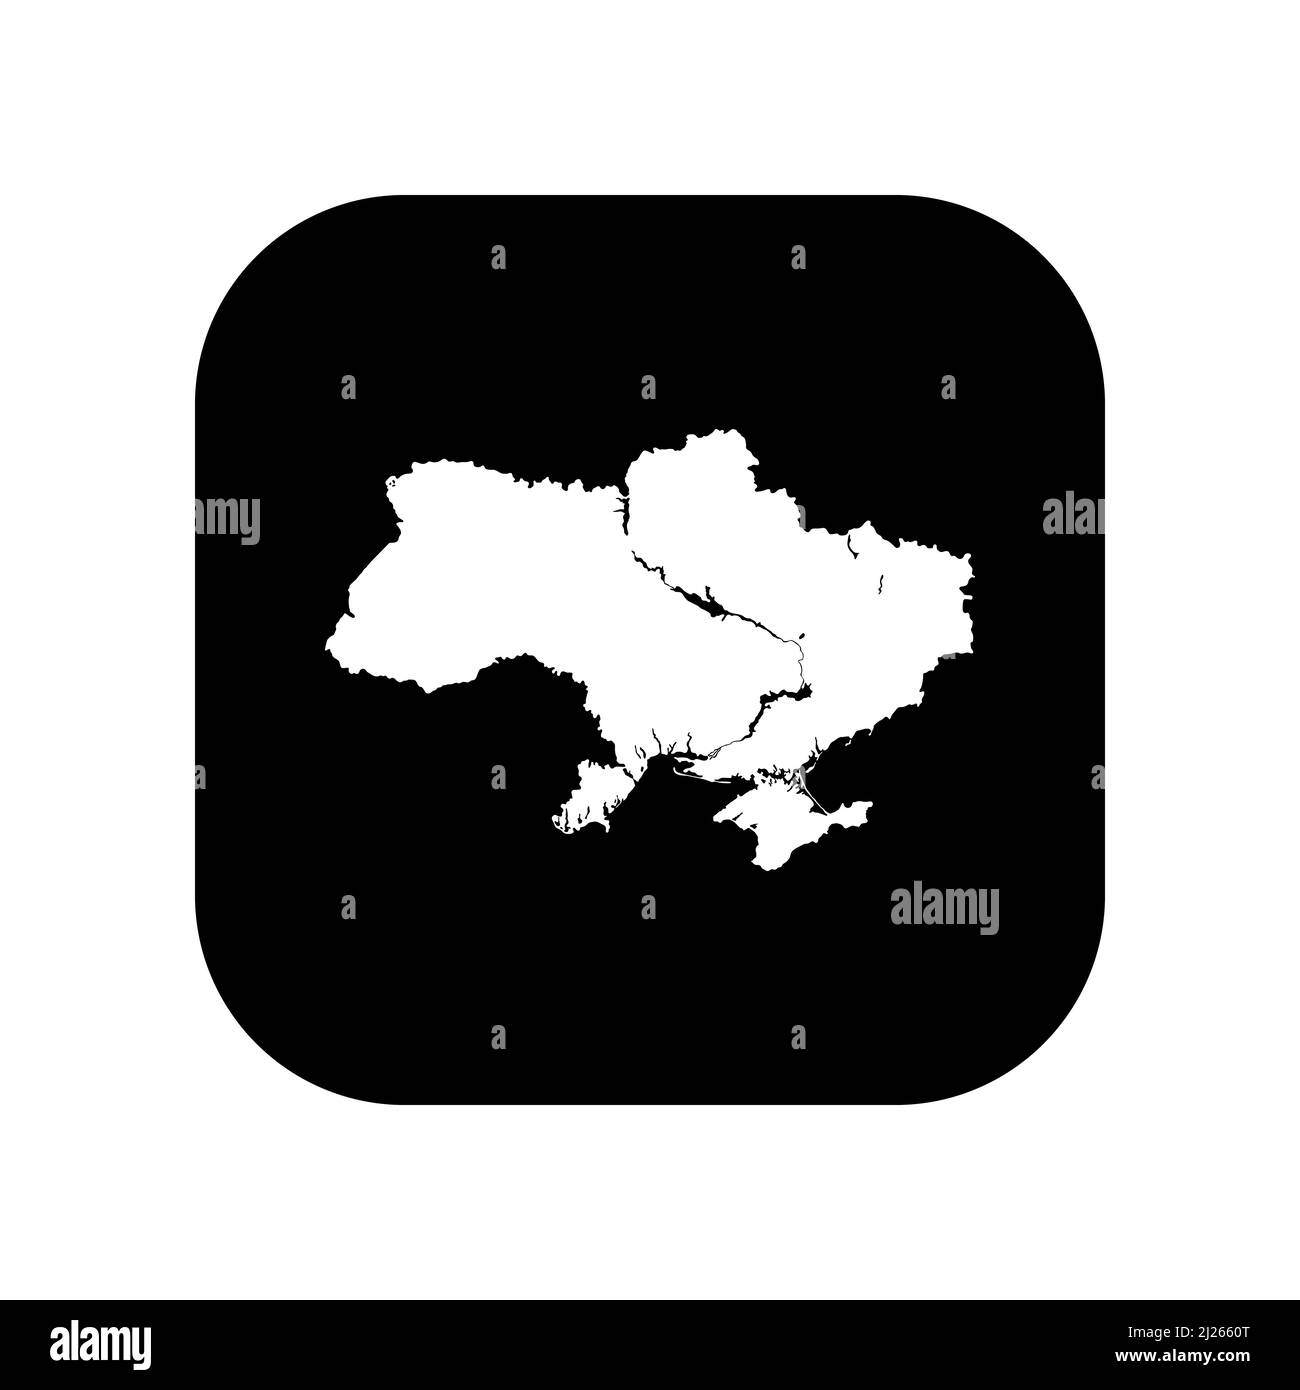 Icona per l'uso in applicazioni di vari gadget. Mappa dell'Ucraina. Stile minimalista e piatto. Illustrazione Vettoriale